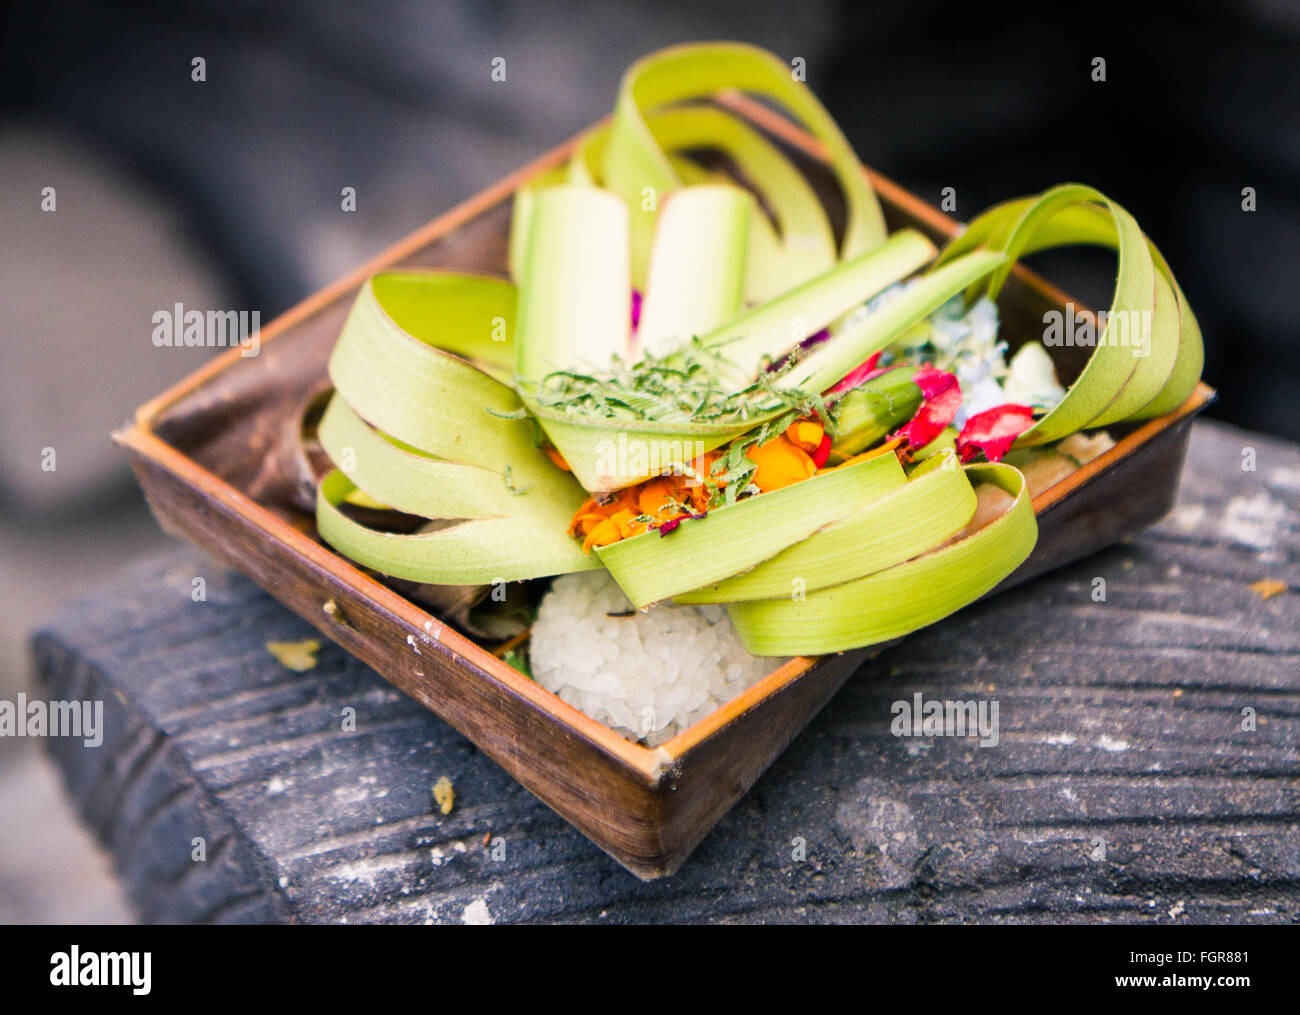 Einen Korb aus Kokos hergestellt Blätter und voller Blumen, Reis und anderen Opfergaben an die Götter zu besänftigen. Stockfoto